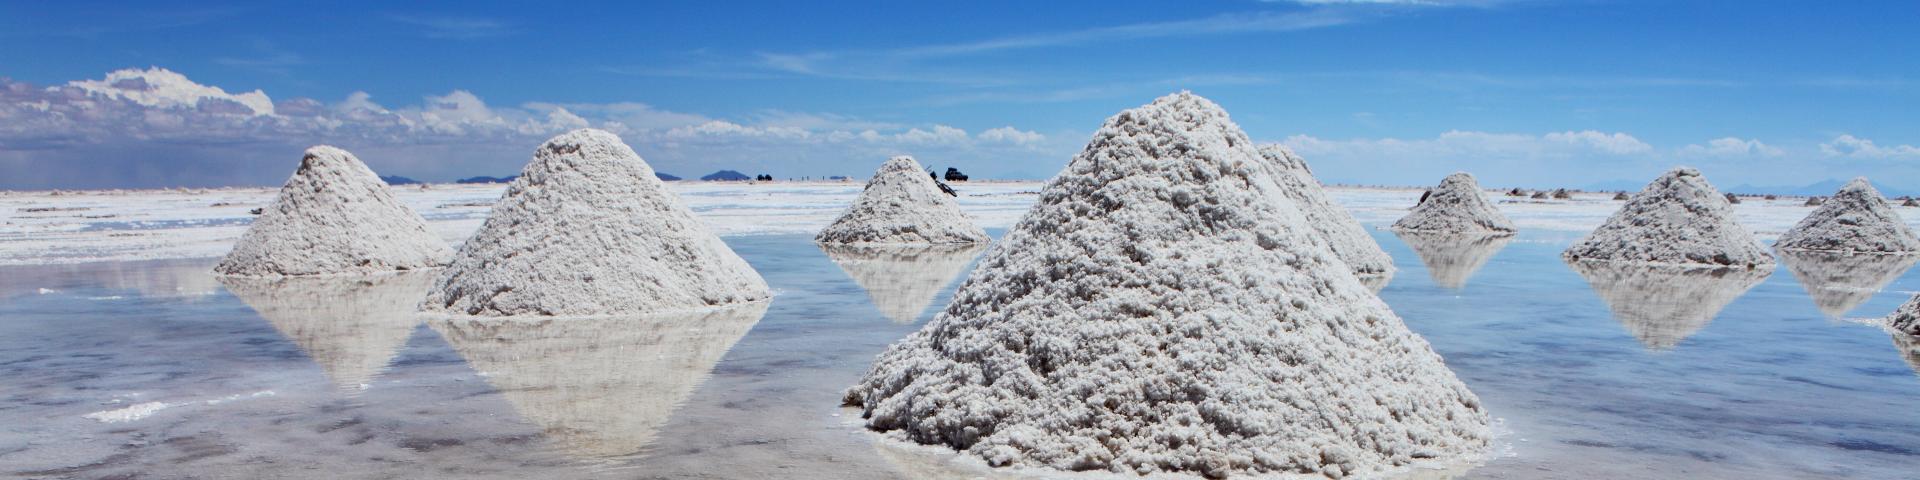 Salar d'Uyuni, désert de sel et plus grand gisement mondial de lithium (Bolivie)